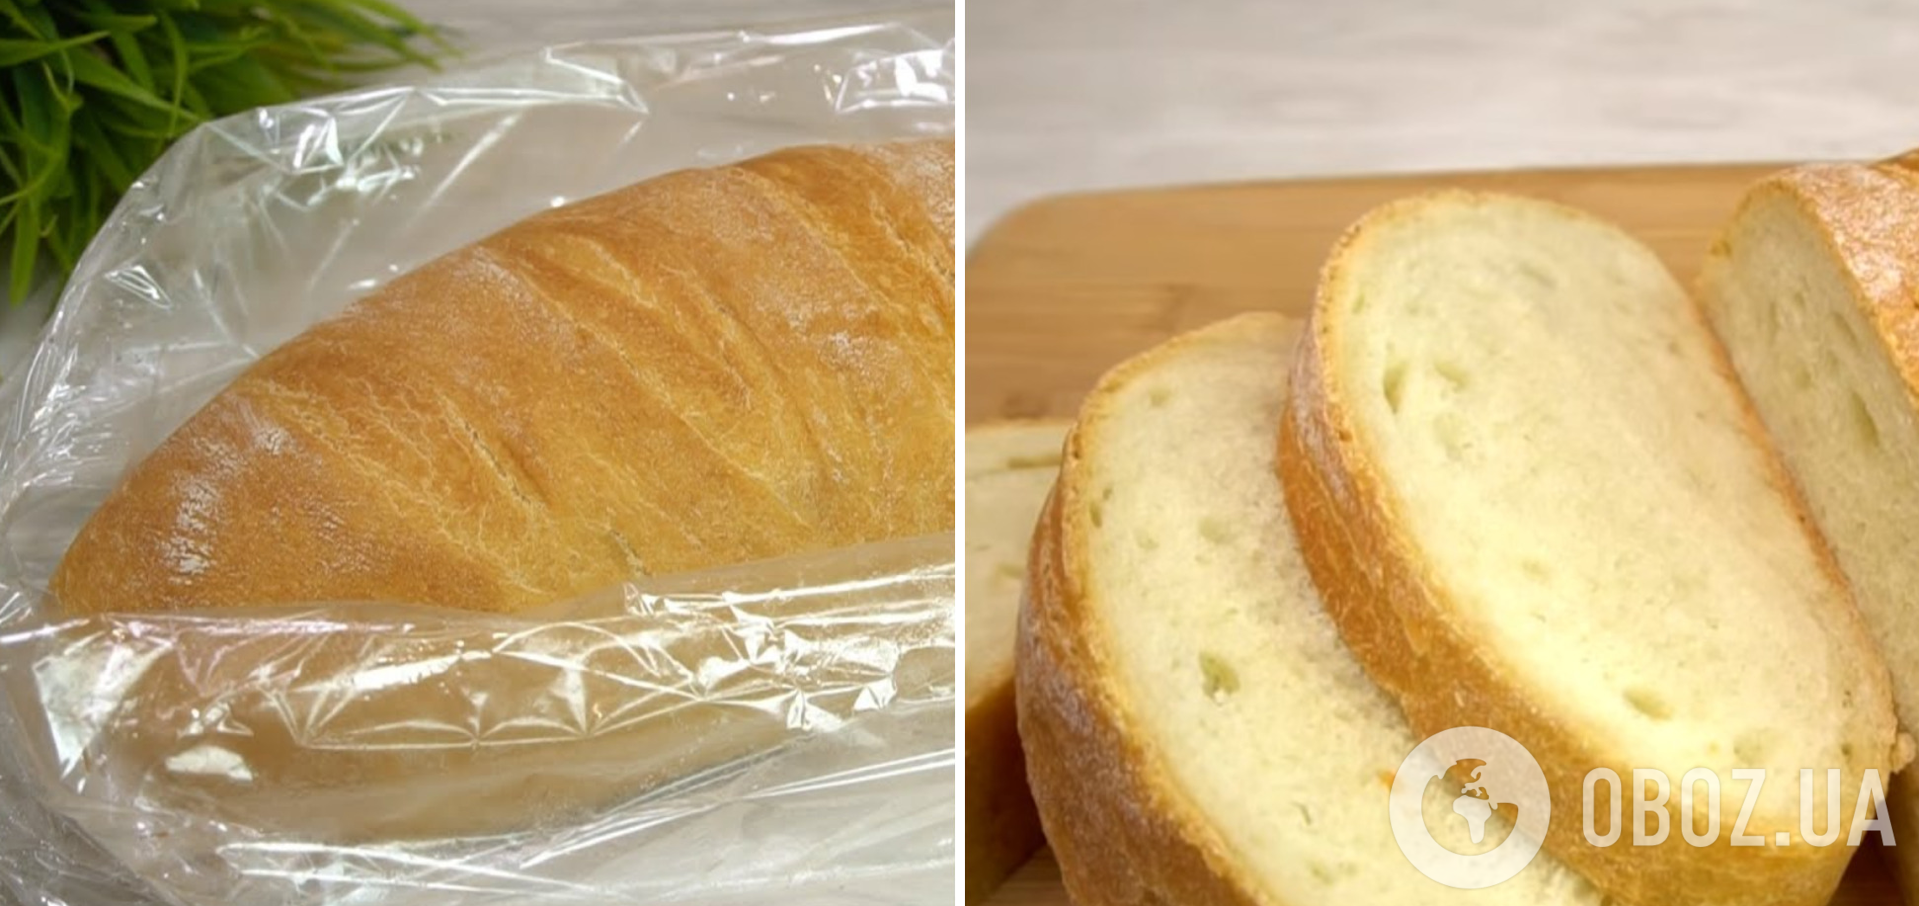 Як спекти хліб в рукаві